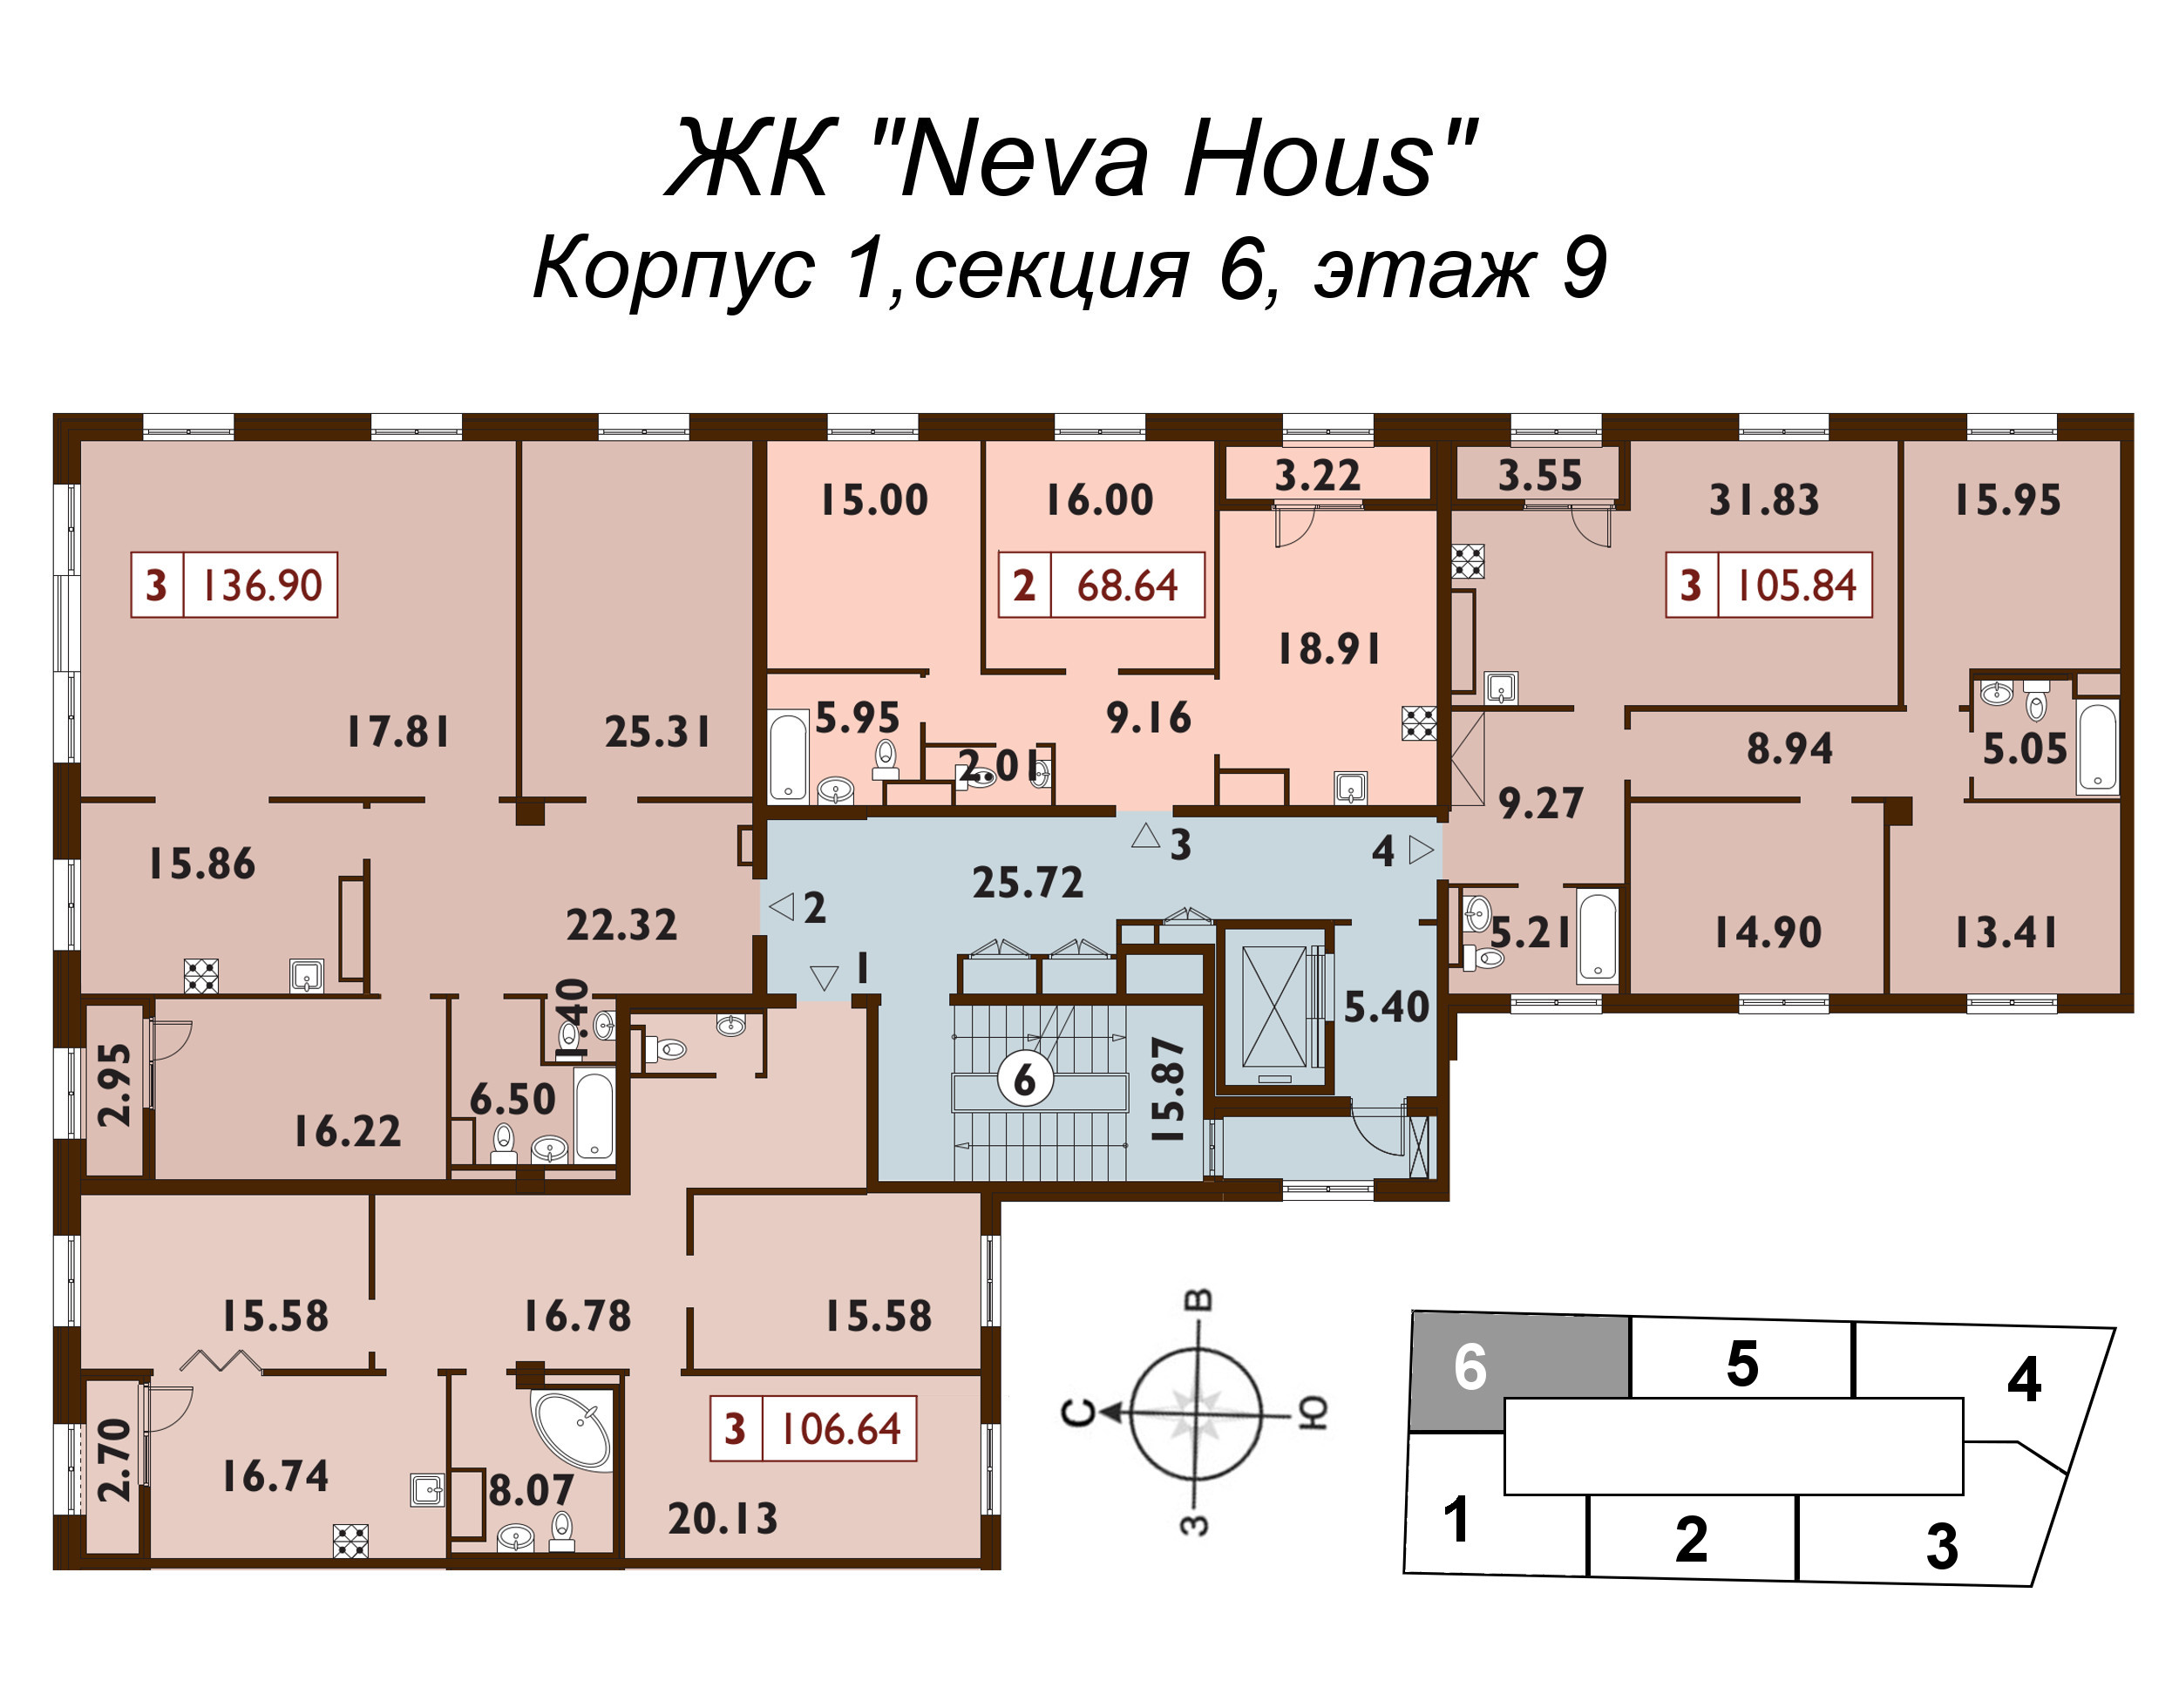 4-комнатная (Евро) квартира, 106.2 м² в ЖК "Neva Haus" - планировка этажа